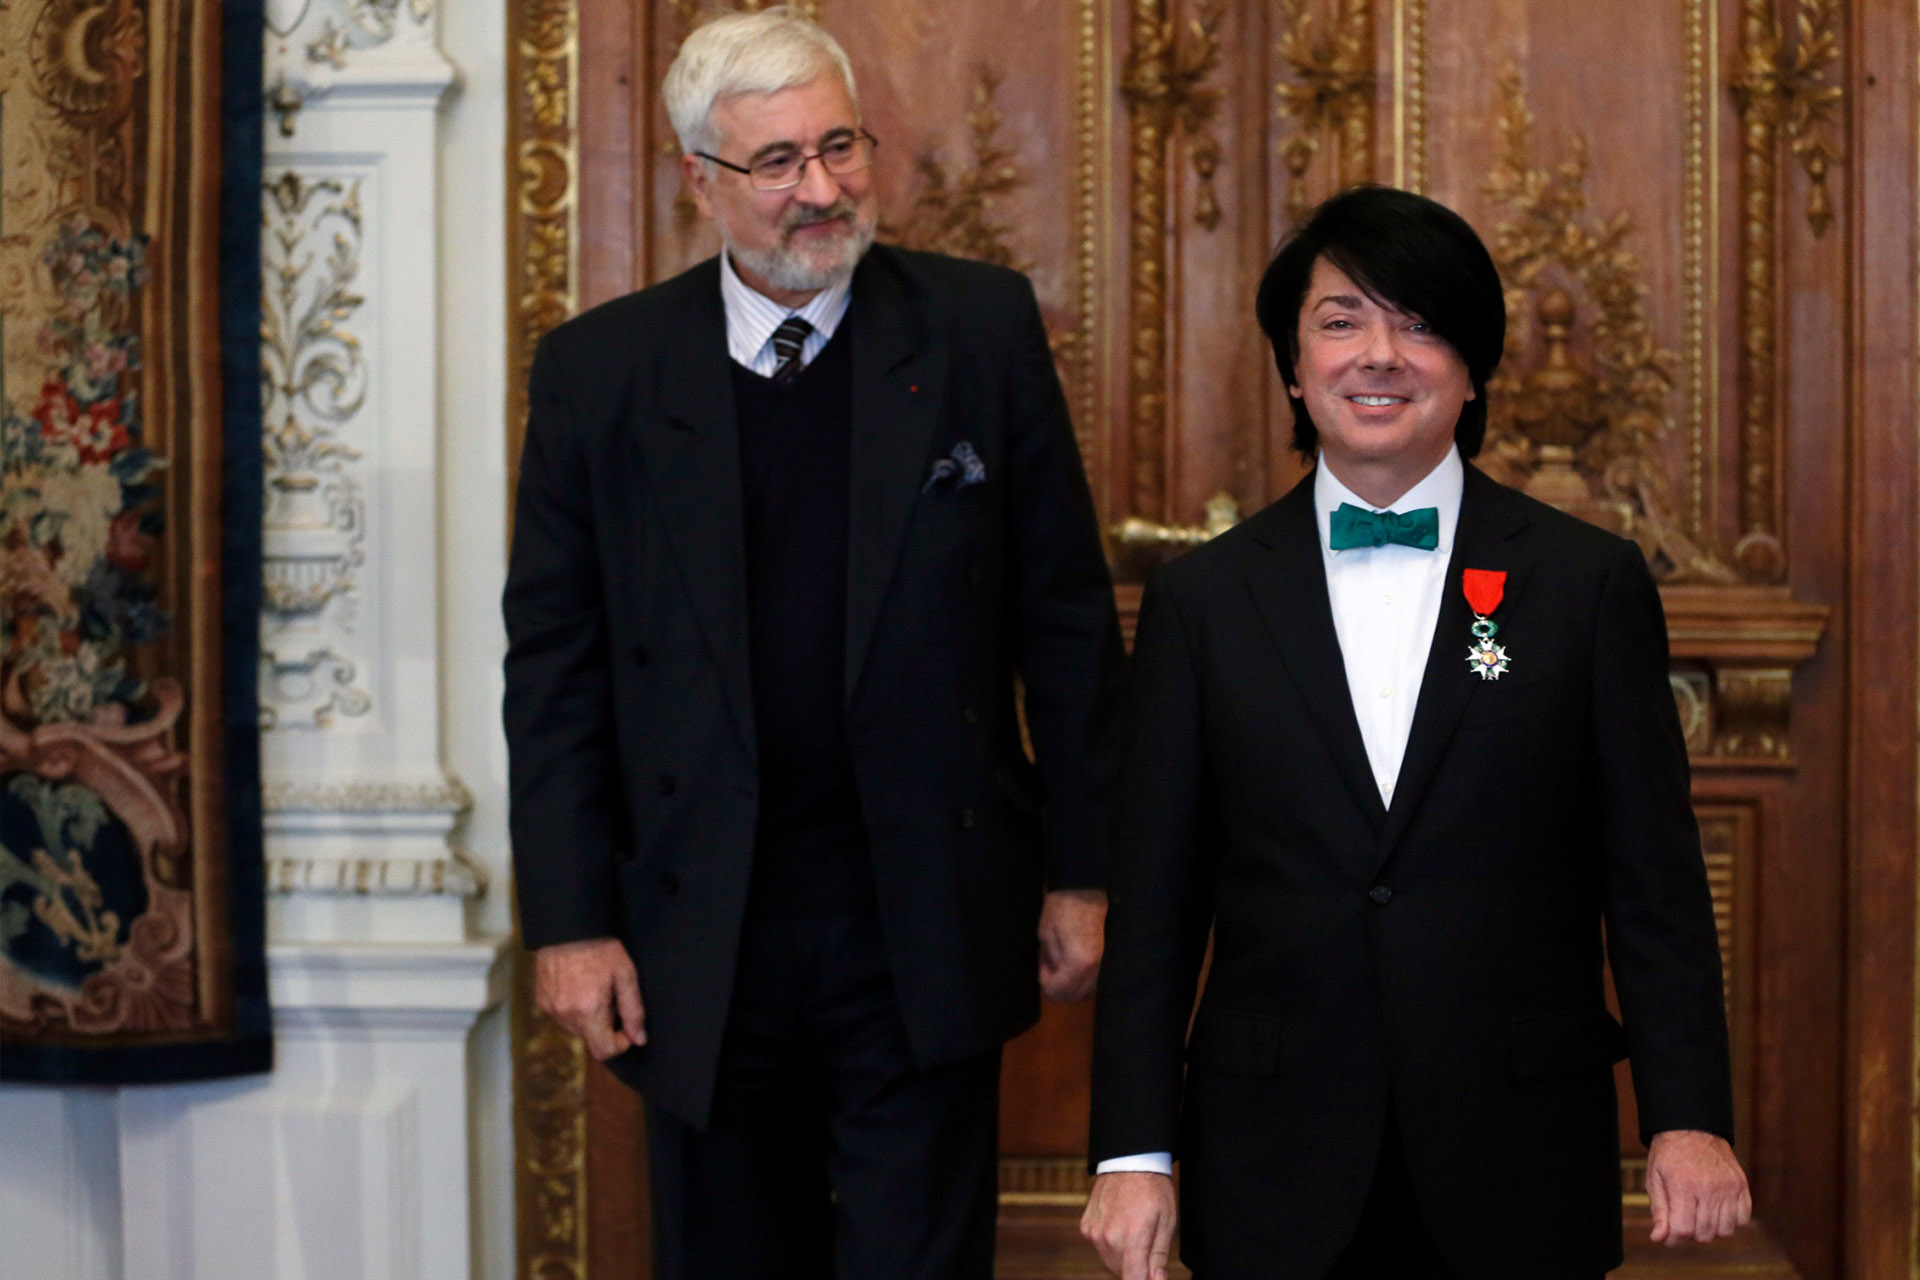 Жан де Глиниасти и Валентин Юдашкин, удостоенный знака отличия офицера ордена Почетного легиона, во время церемонии награждения в посольстве Франции